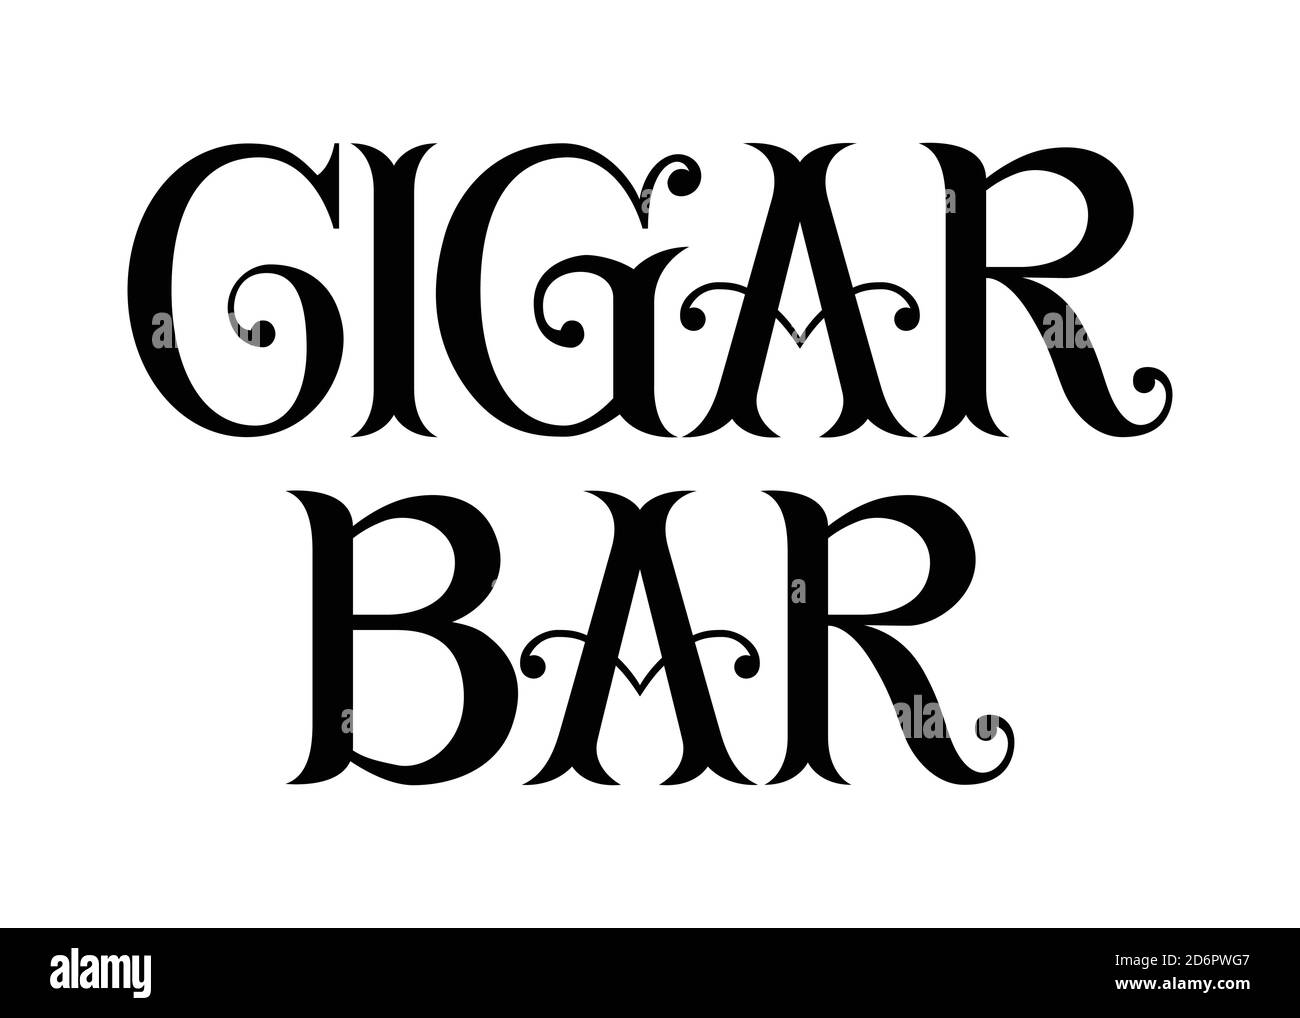 Cigar Bar. Lettere a mano d'arte stile vintage su sfondo isolato. Bianco e nero. Grafica vettoriale t shirt disegno, stampa, poster, Illustrazione Vettoriale